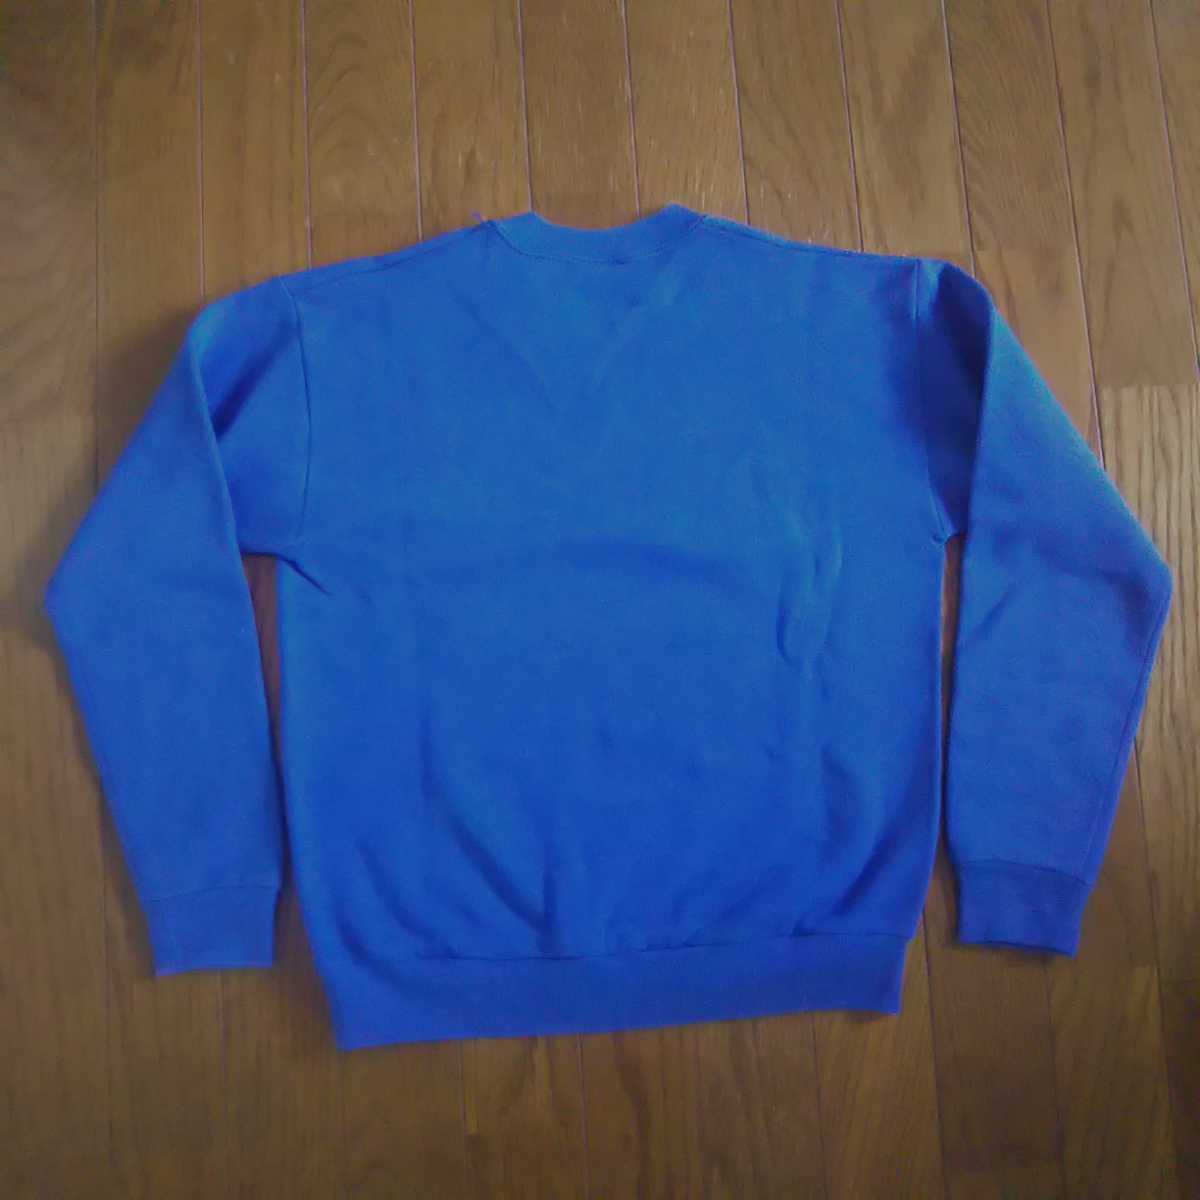  б/у одежда Jerseys тренировочный тренировочные брюки футболка синий голубой Logo колледж женский мужской для мужчин и женщин Vintage Vintage 